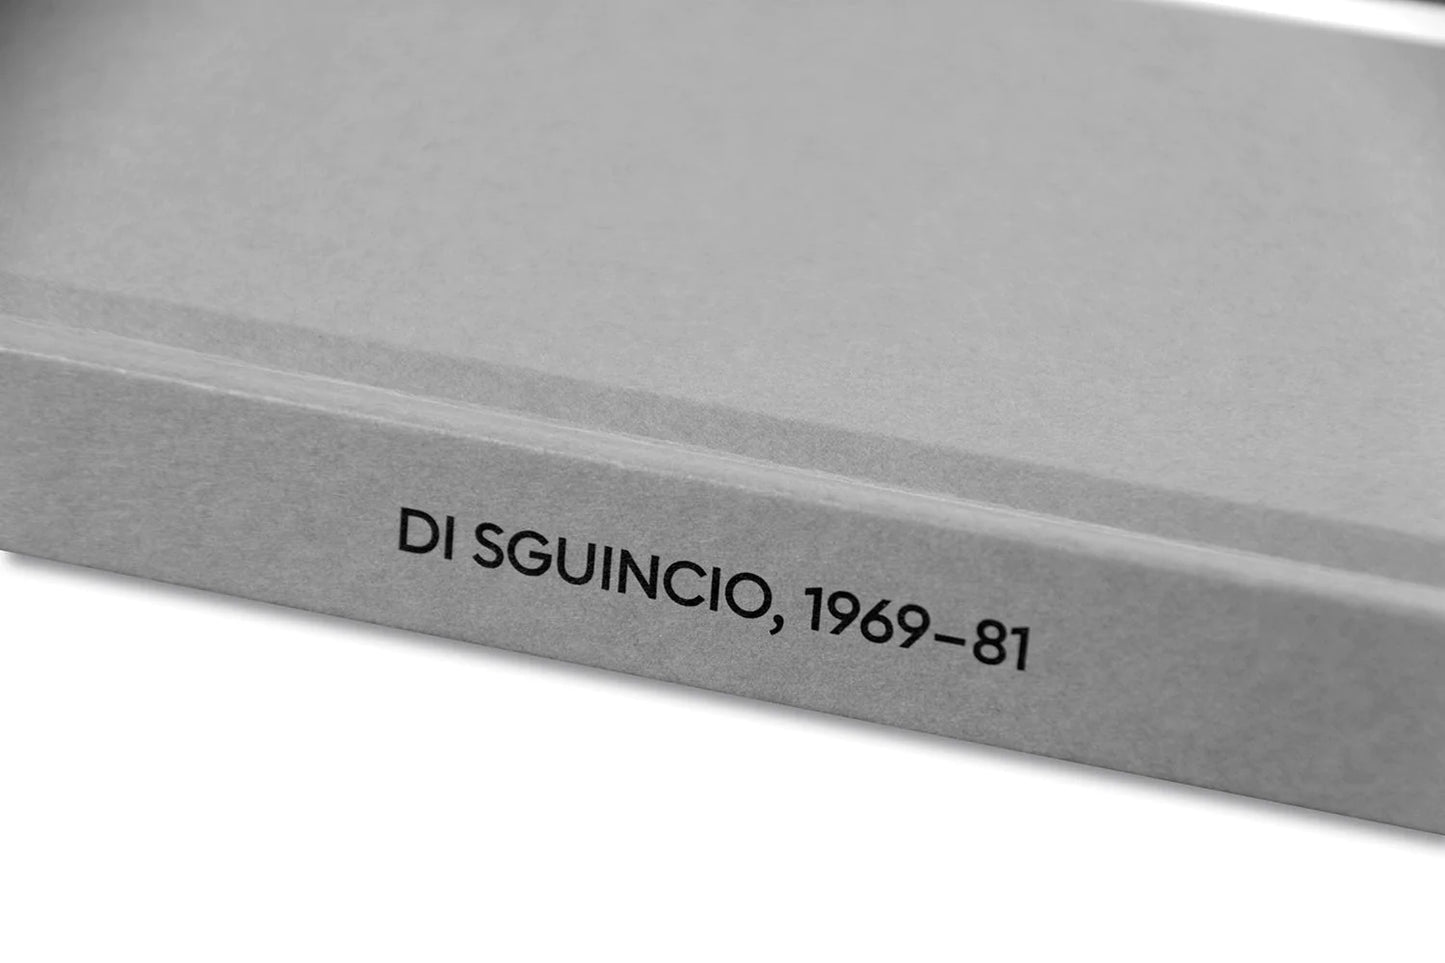 Guido Guidi - Di sguincio, 1969–81